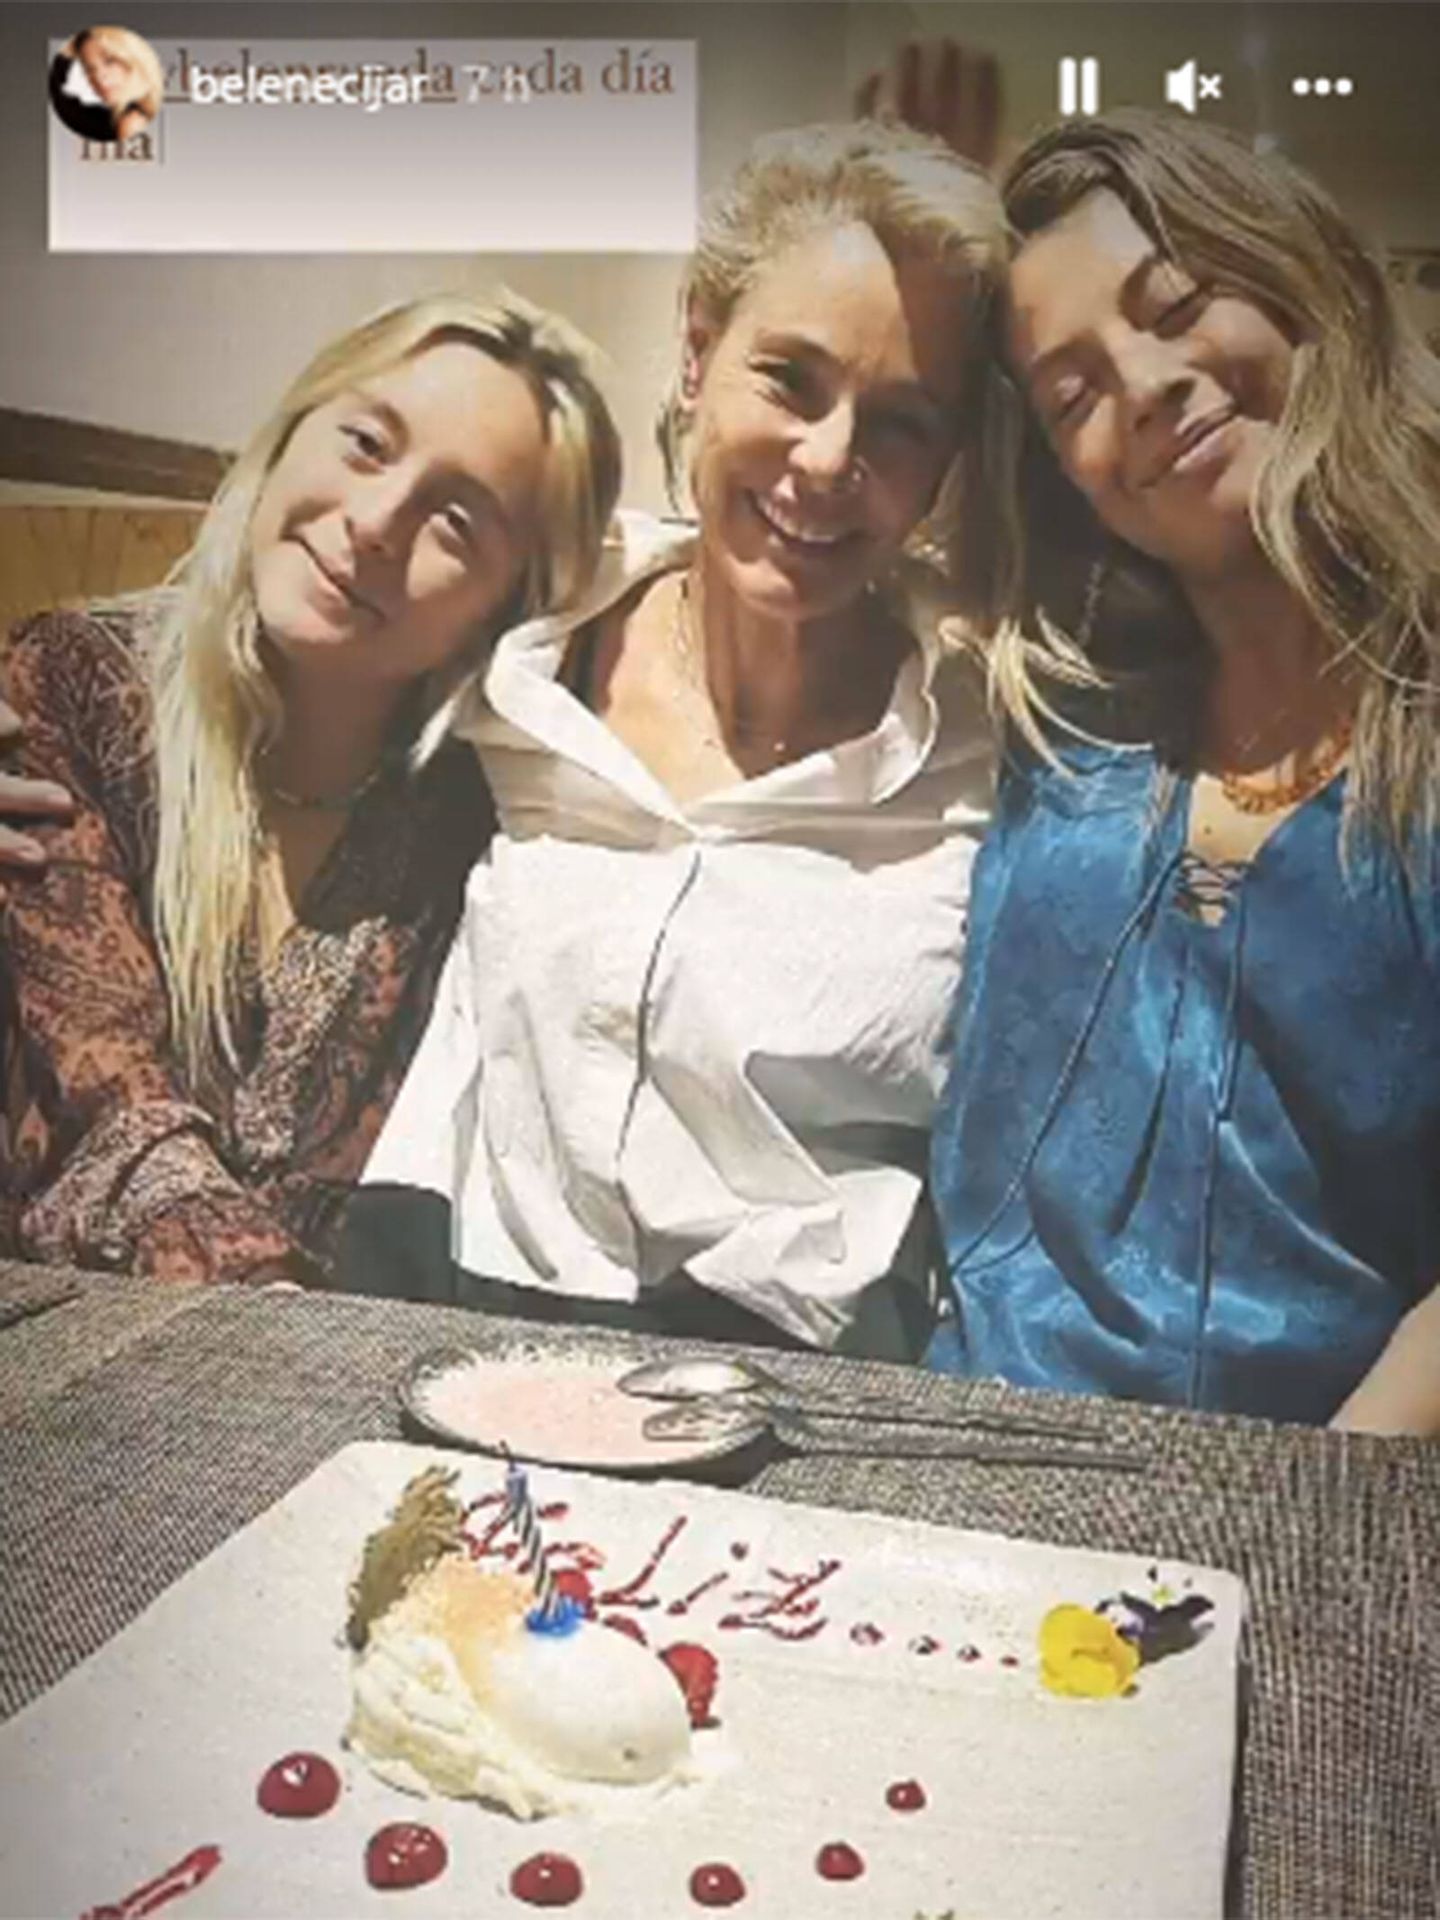 Belén Rueda celebra su cumpleaños junto a sus dos hijas. (Instagram @belenecijar)